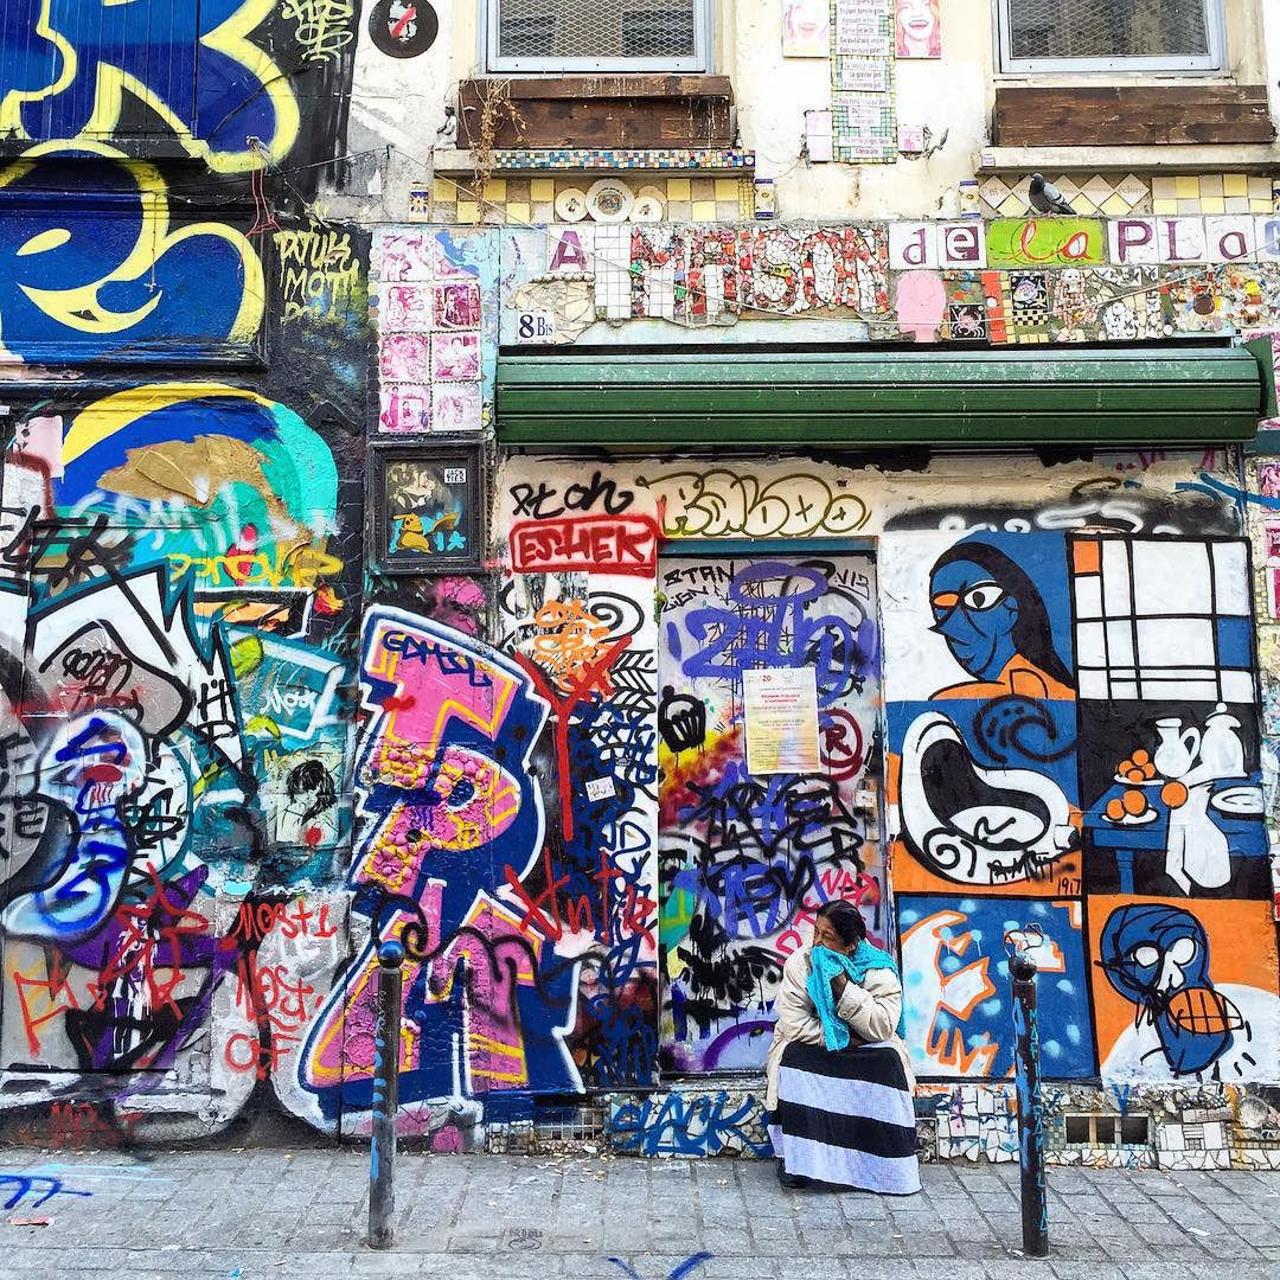 #Paris #graffiti photo by @bb.partiu.paris http://ift.tt/1FtncyK #StreetArt http://t.co/1CWDPDNhoO